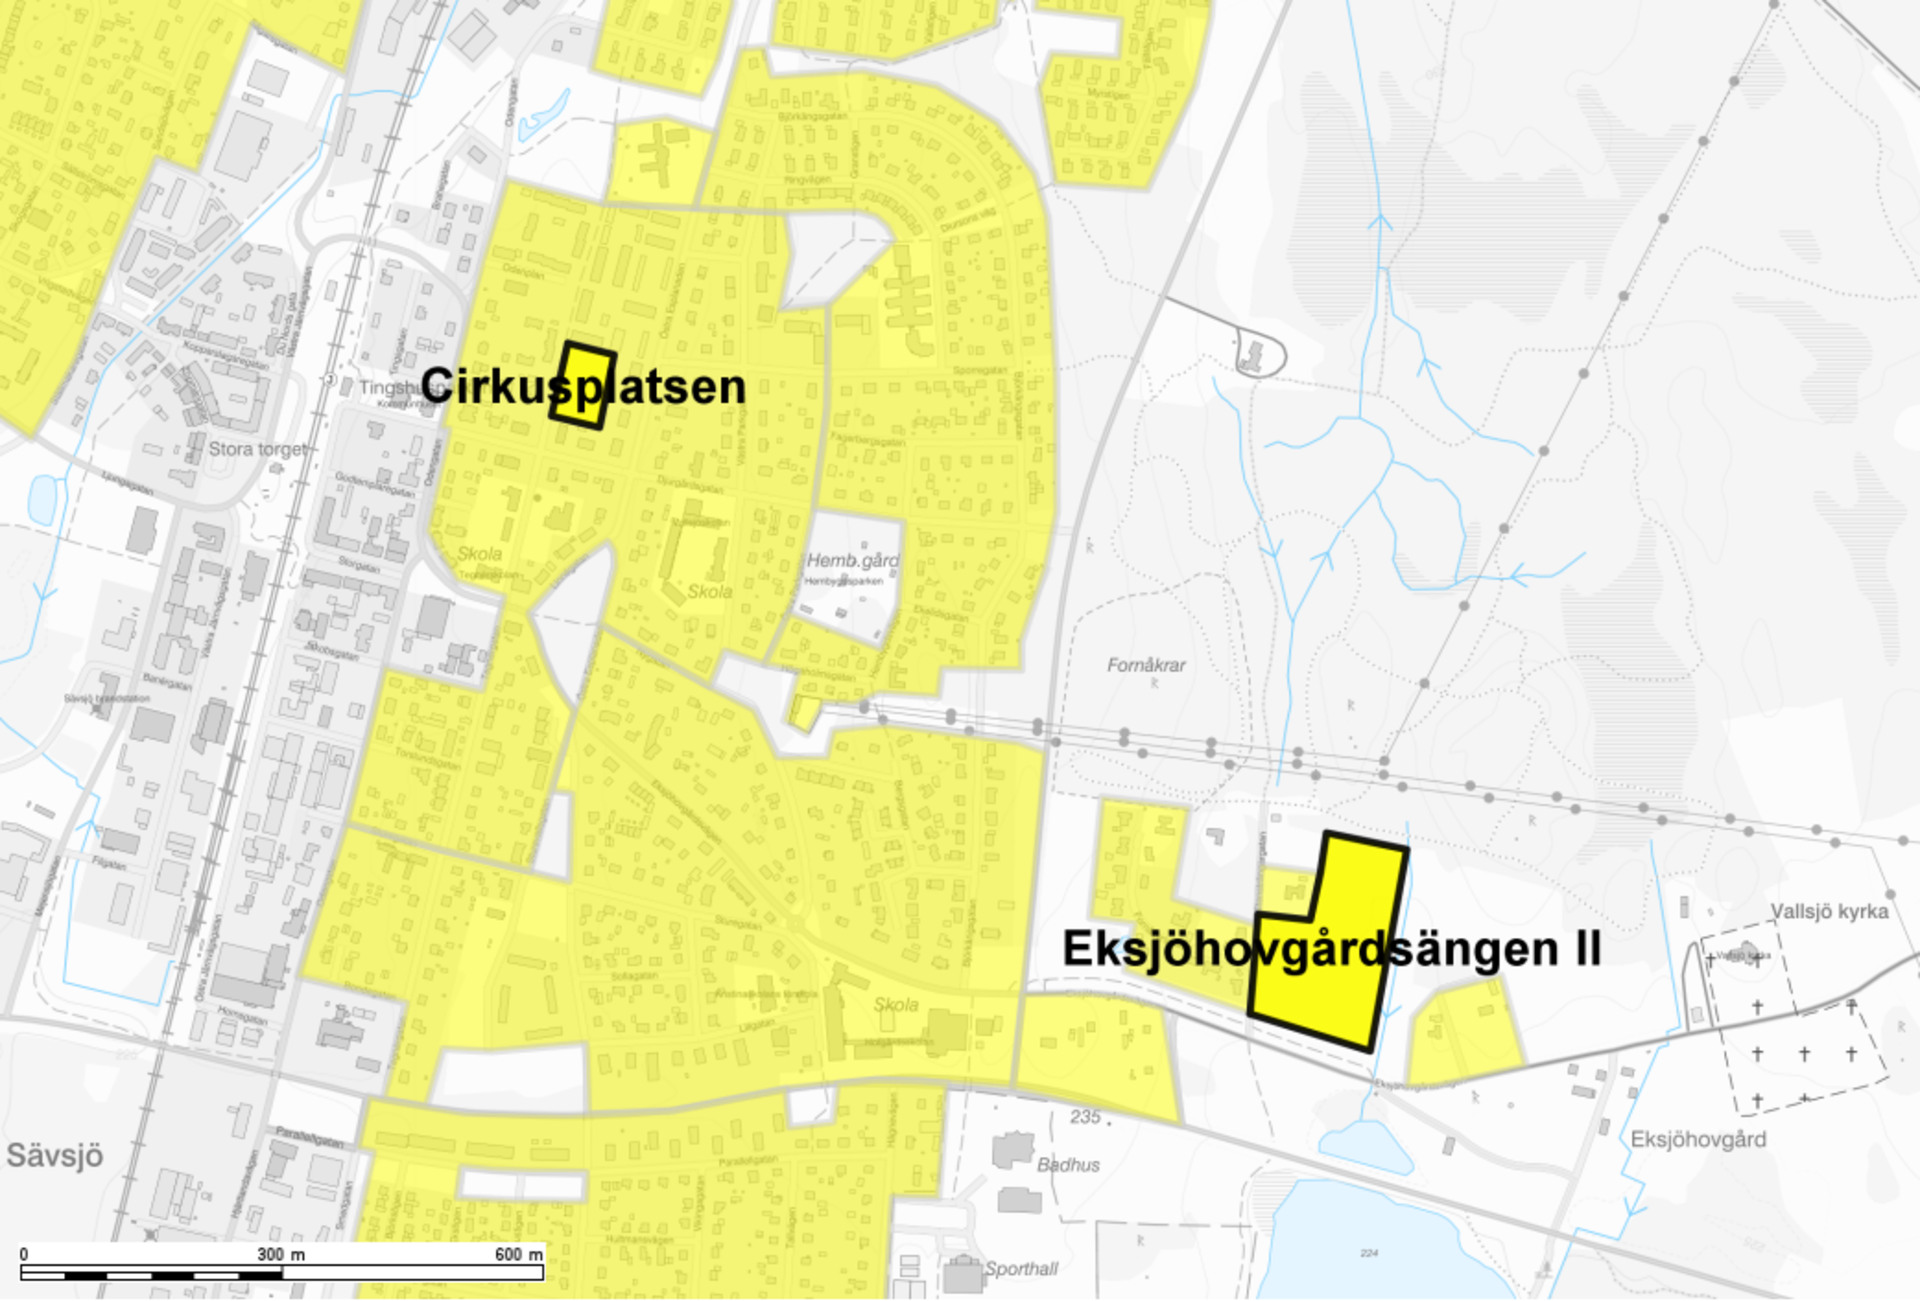 Karta över områdena Cirkusplatsen och Eksjöhovgårdsängen II.